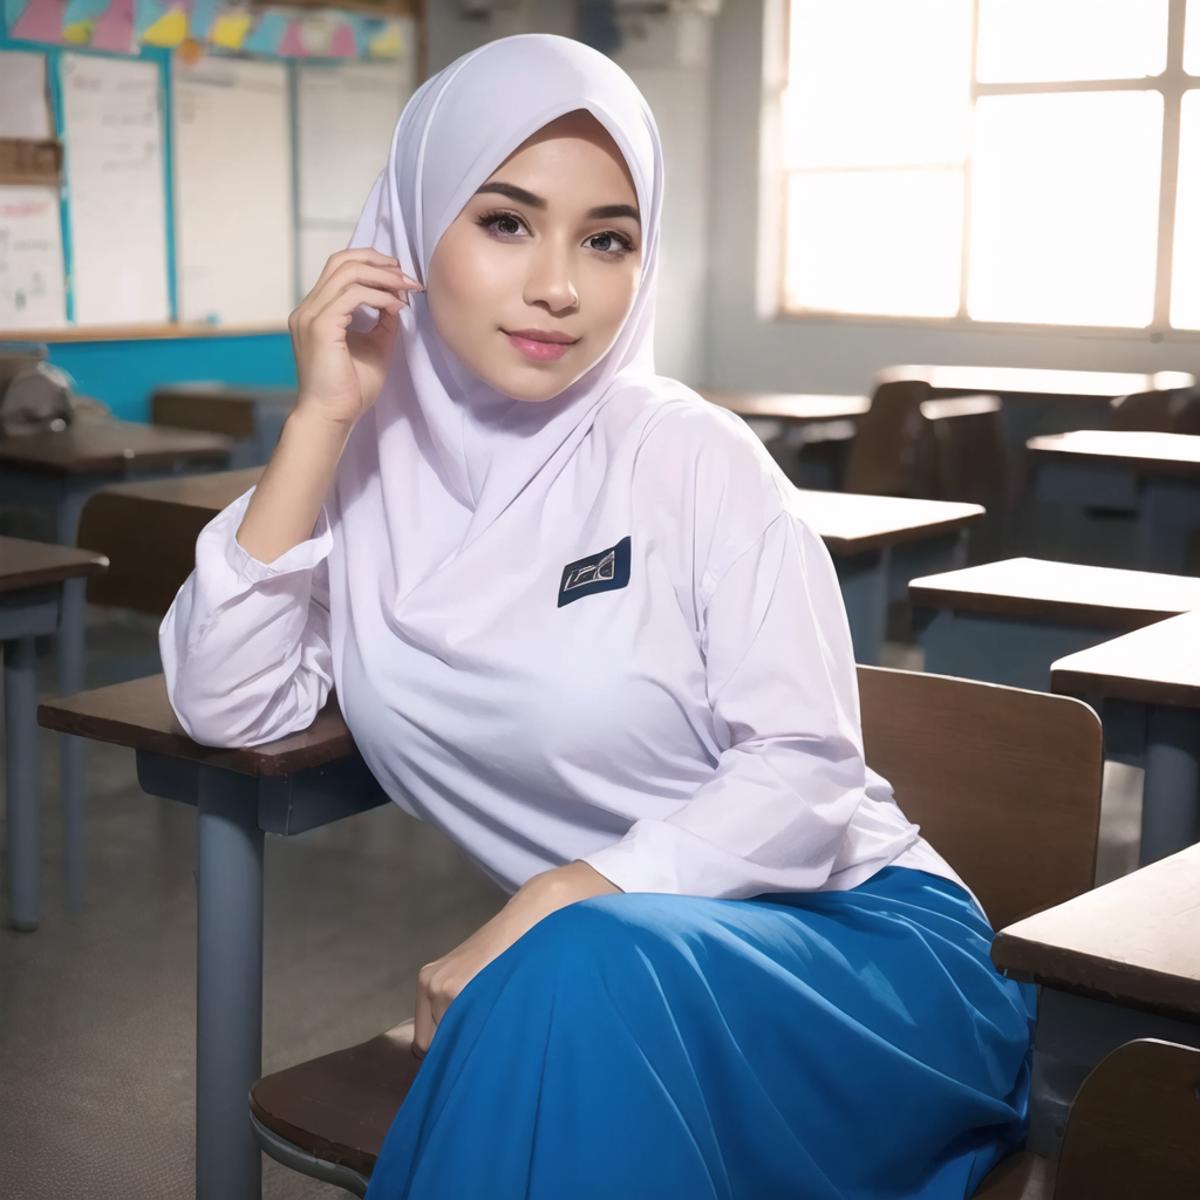 Malaysian Baju Kurung (School) image by ai_raiki